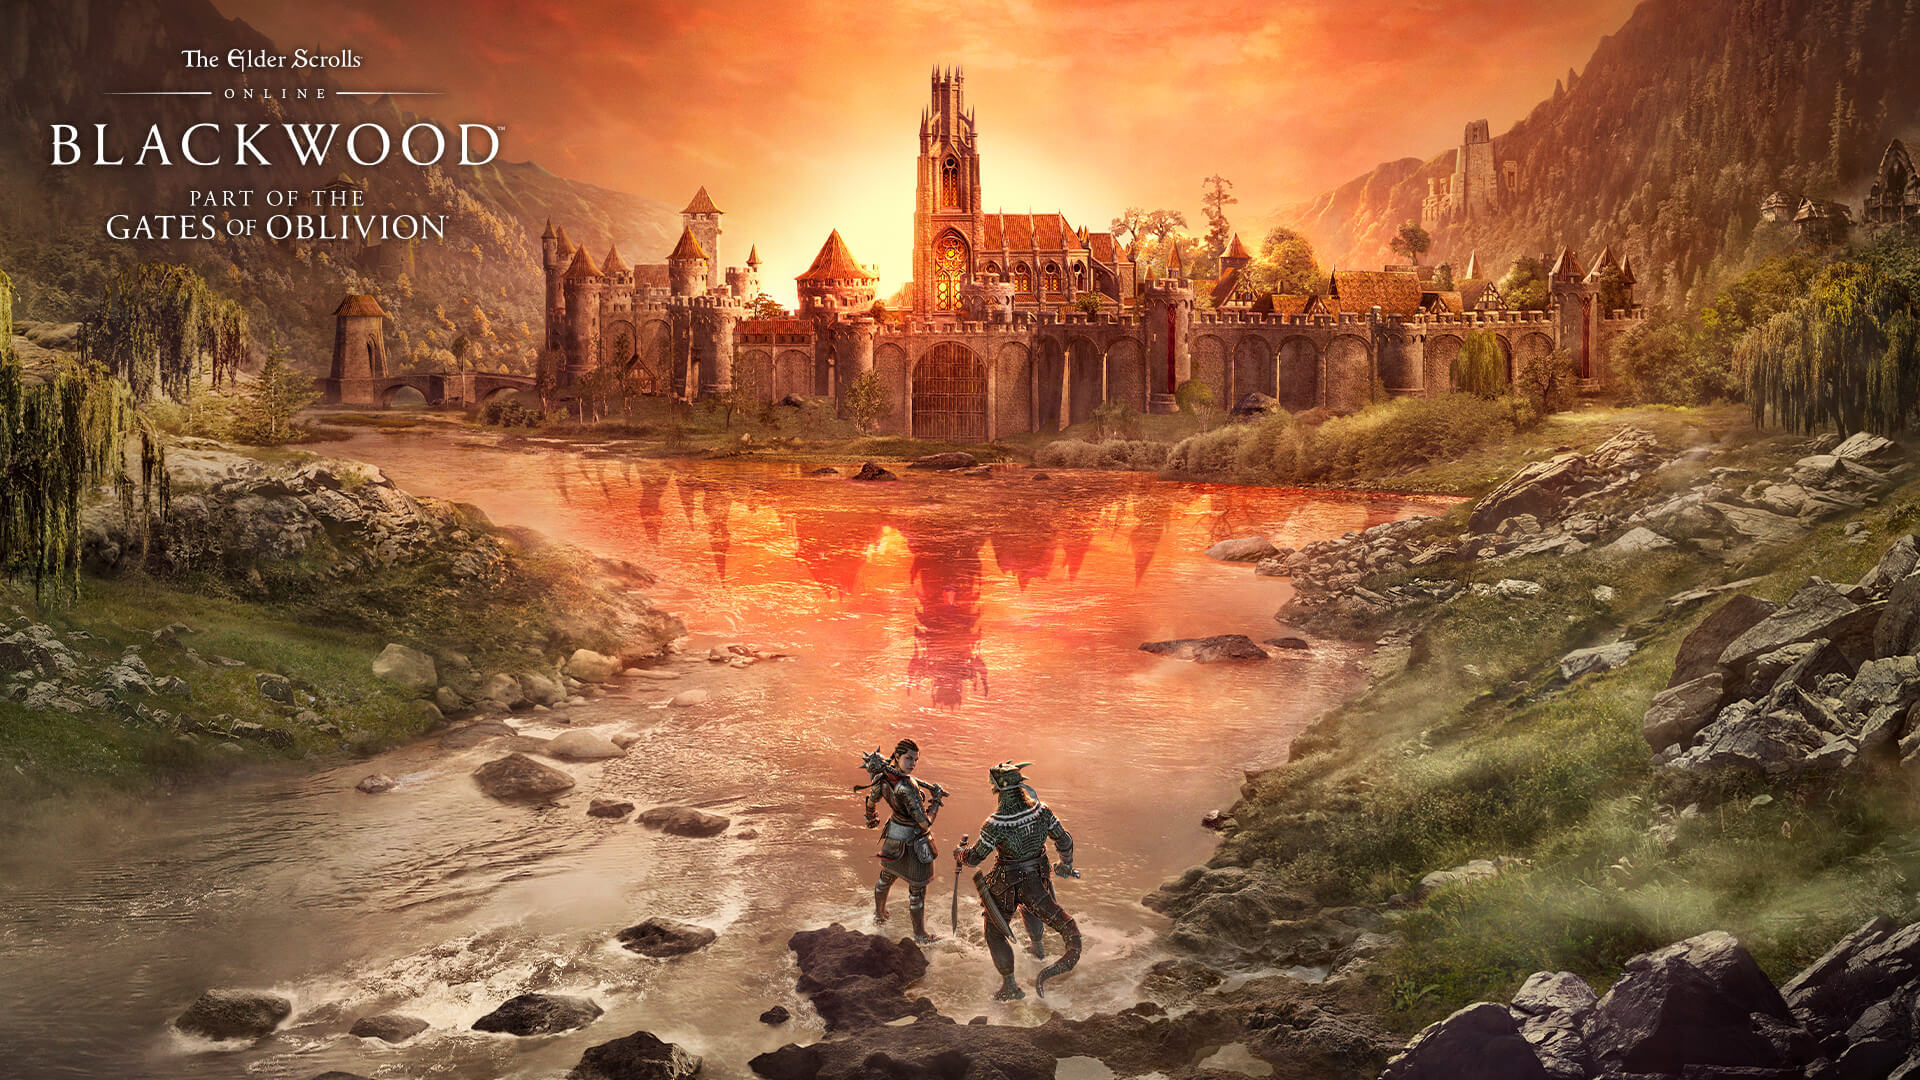 Découvrez les Portes d’Oblivion dans The Elder Scrolls Online: Blackwood, disponible le 8 juin